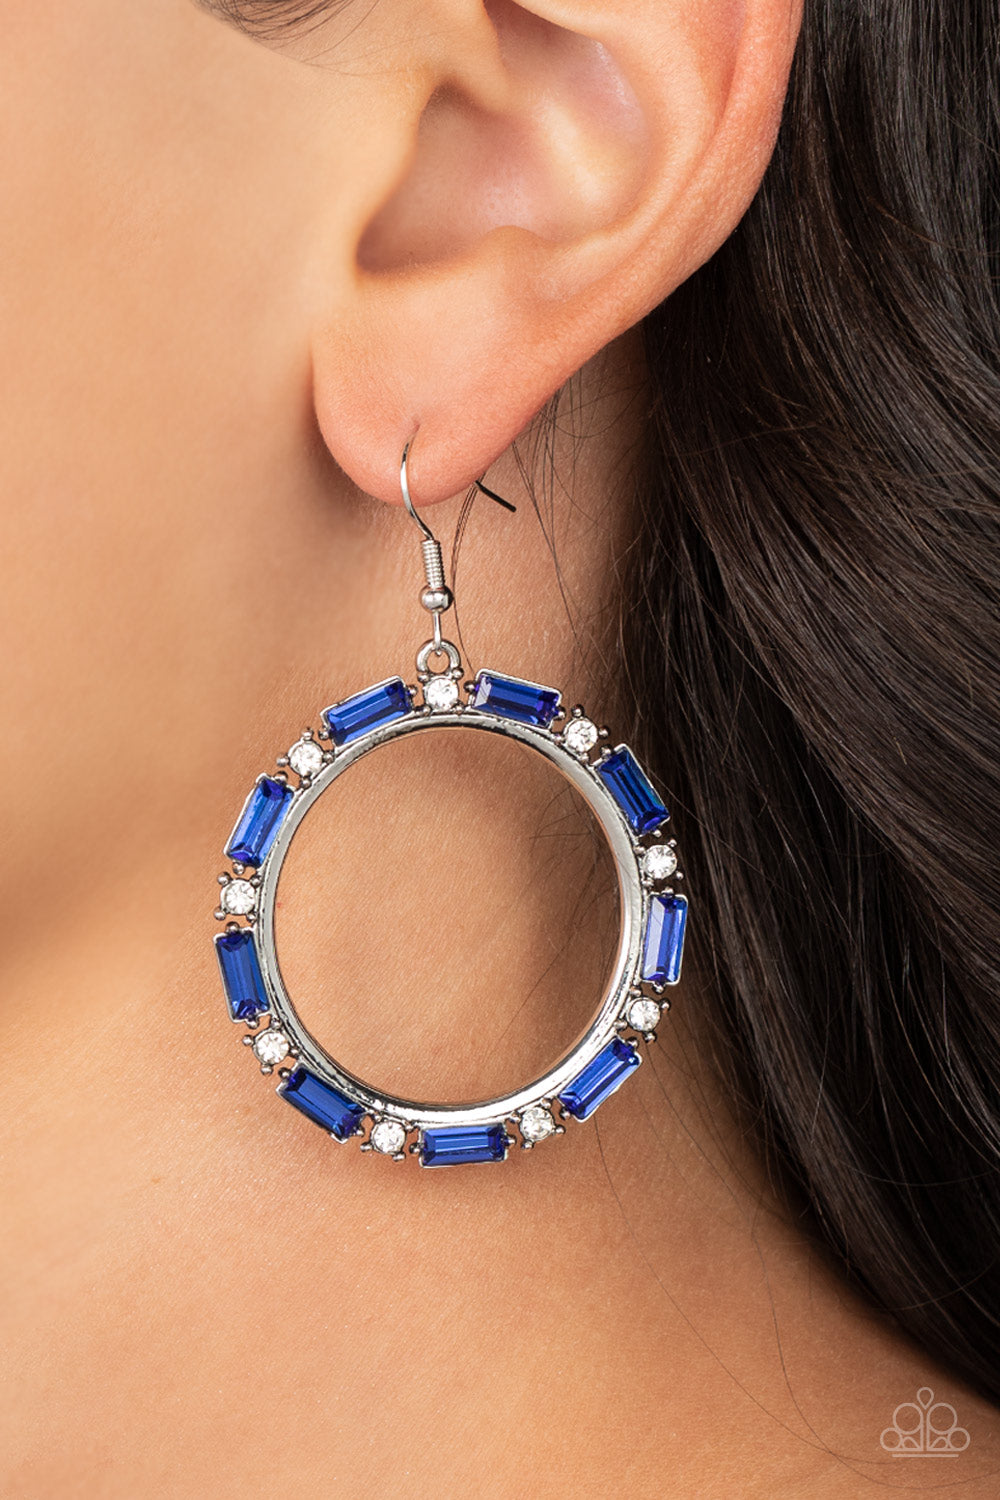 Silver Earrings Hoop - Paparazzi Gritty Glow - Blue Earrings Paparazzi  jewelry image